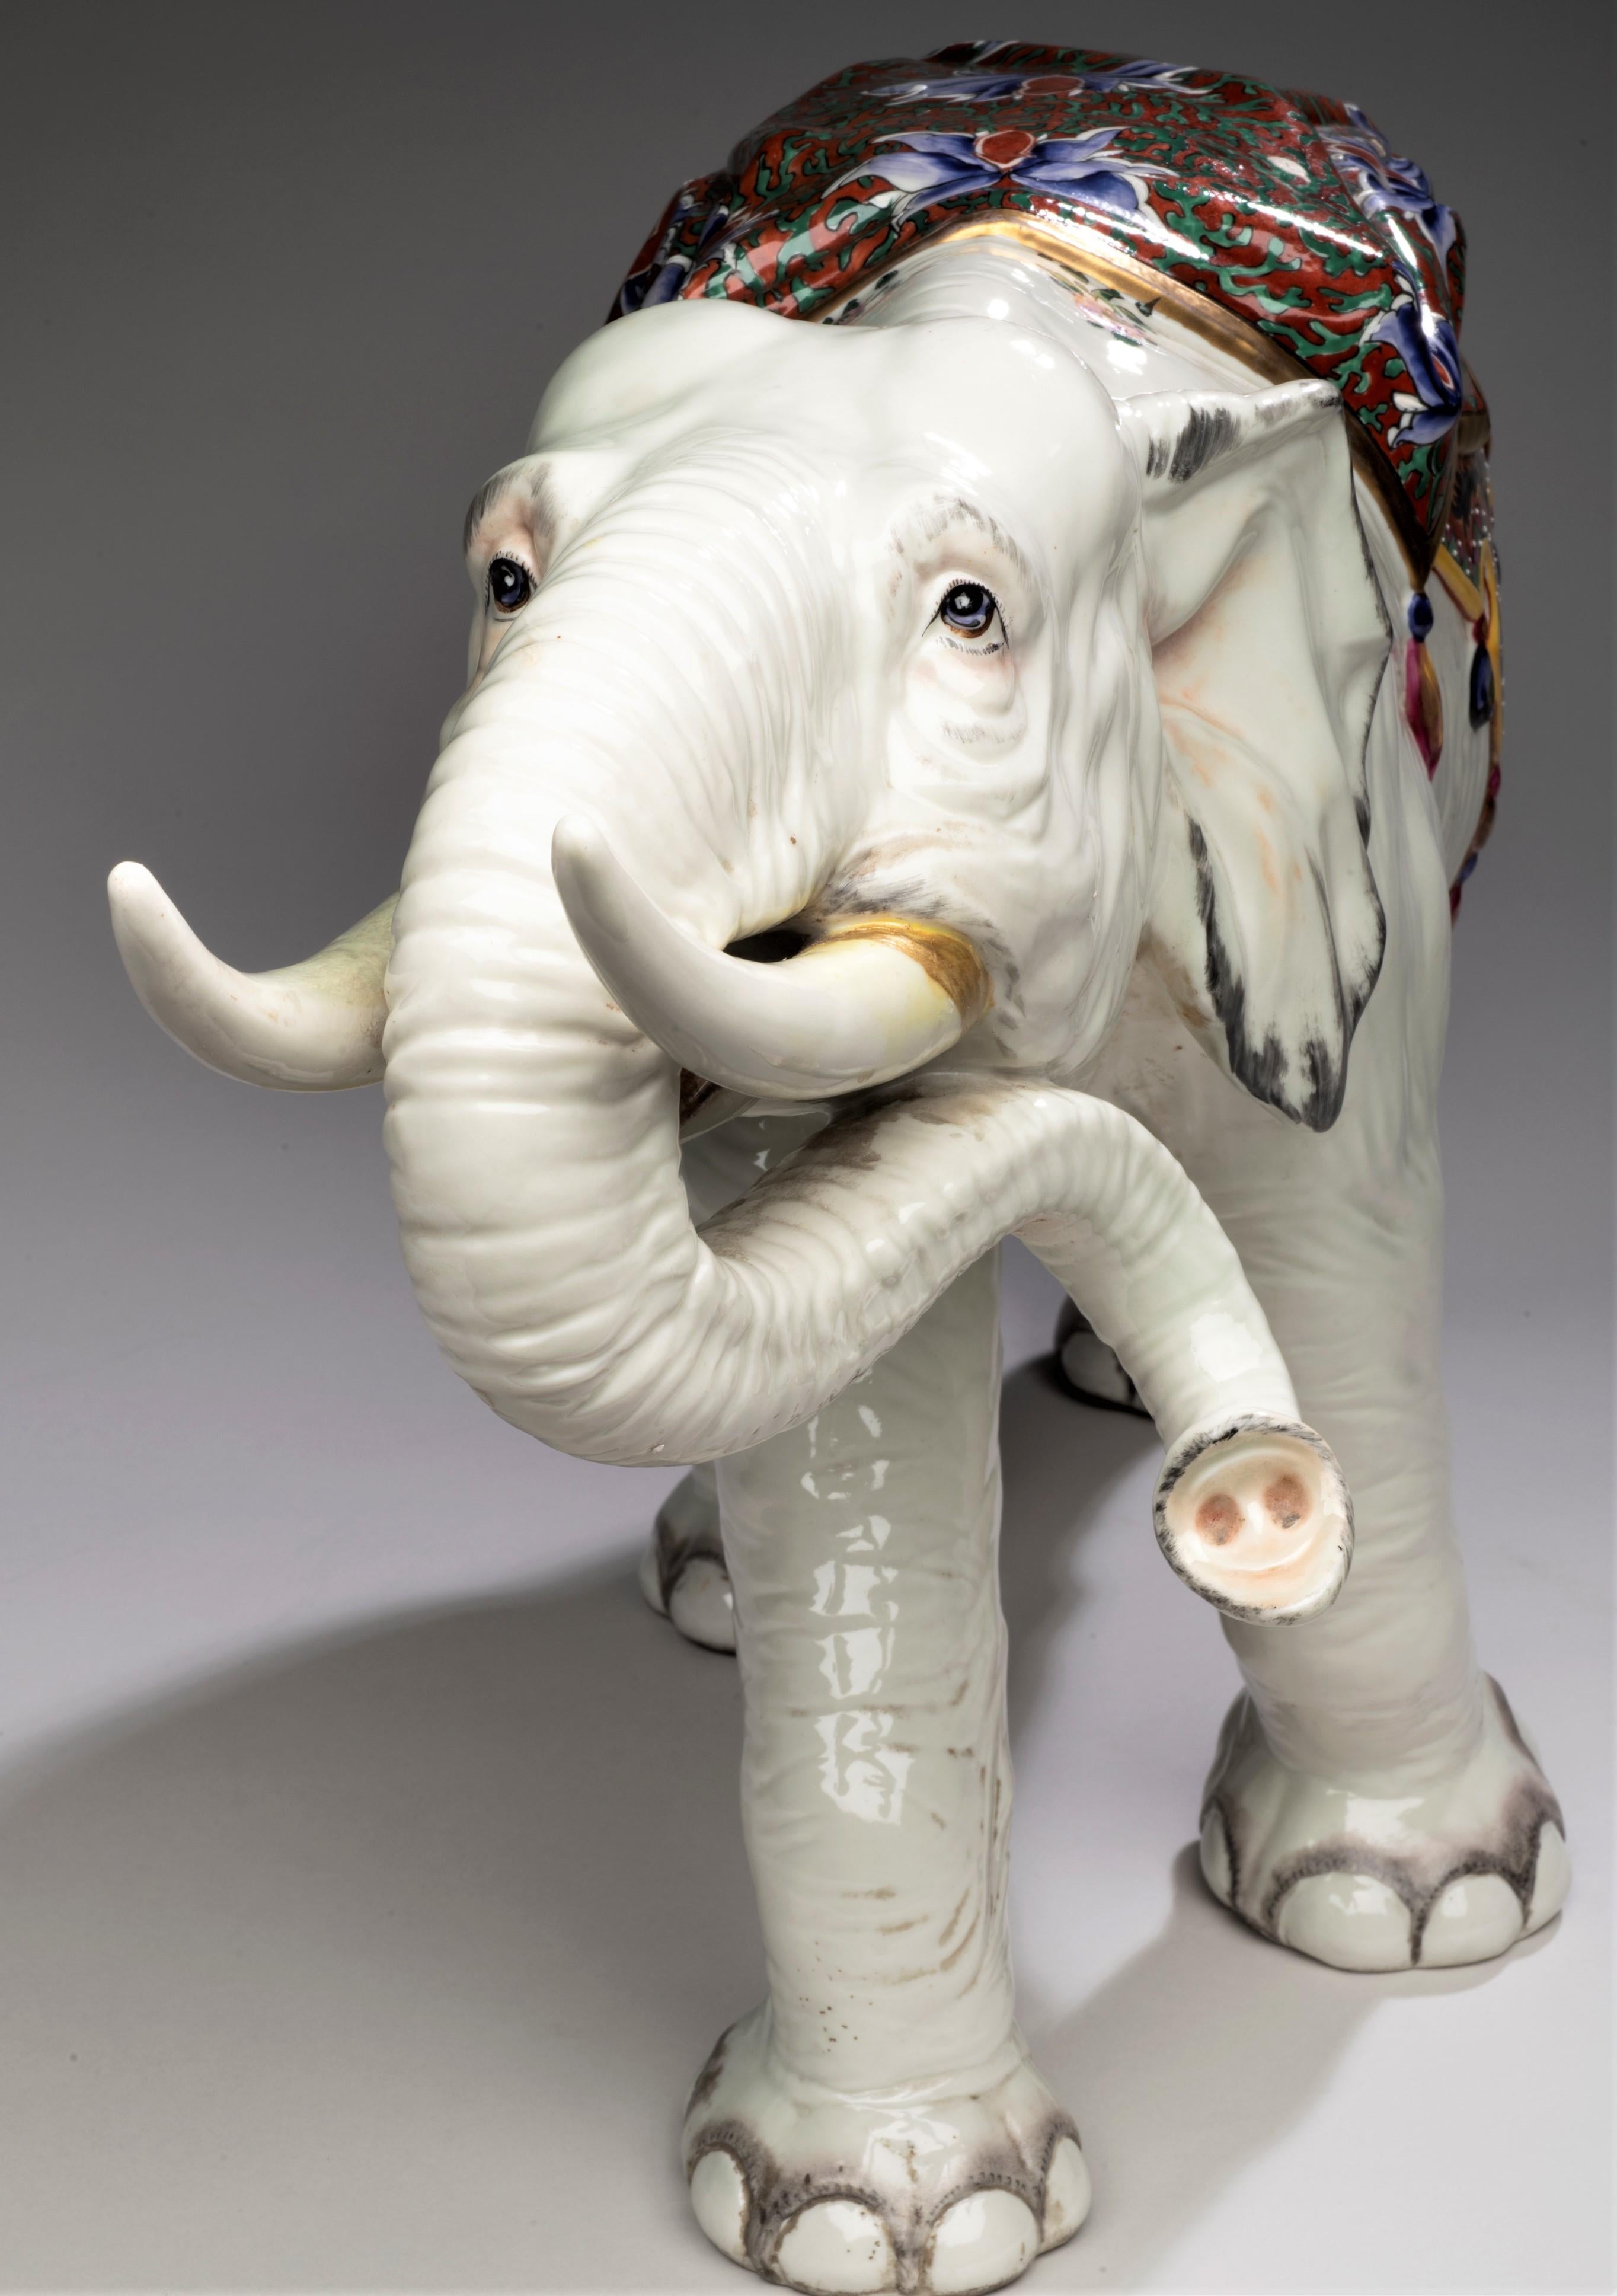 Sehr großer Porzellan-Elefant
Frankreich, um 1900
Porzellan, Emaille
28 x 14 1/2 x 9 Zoll

